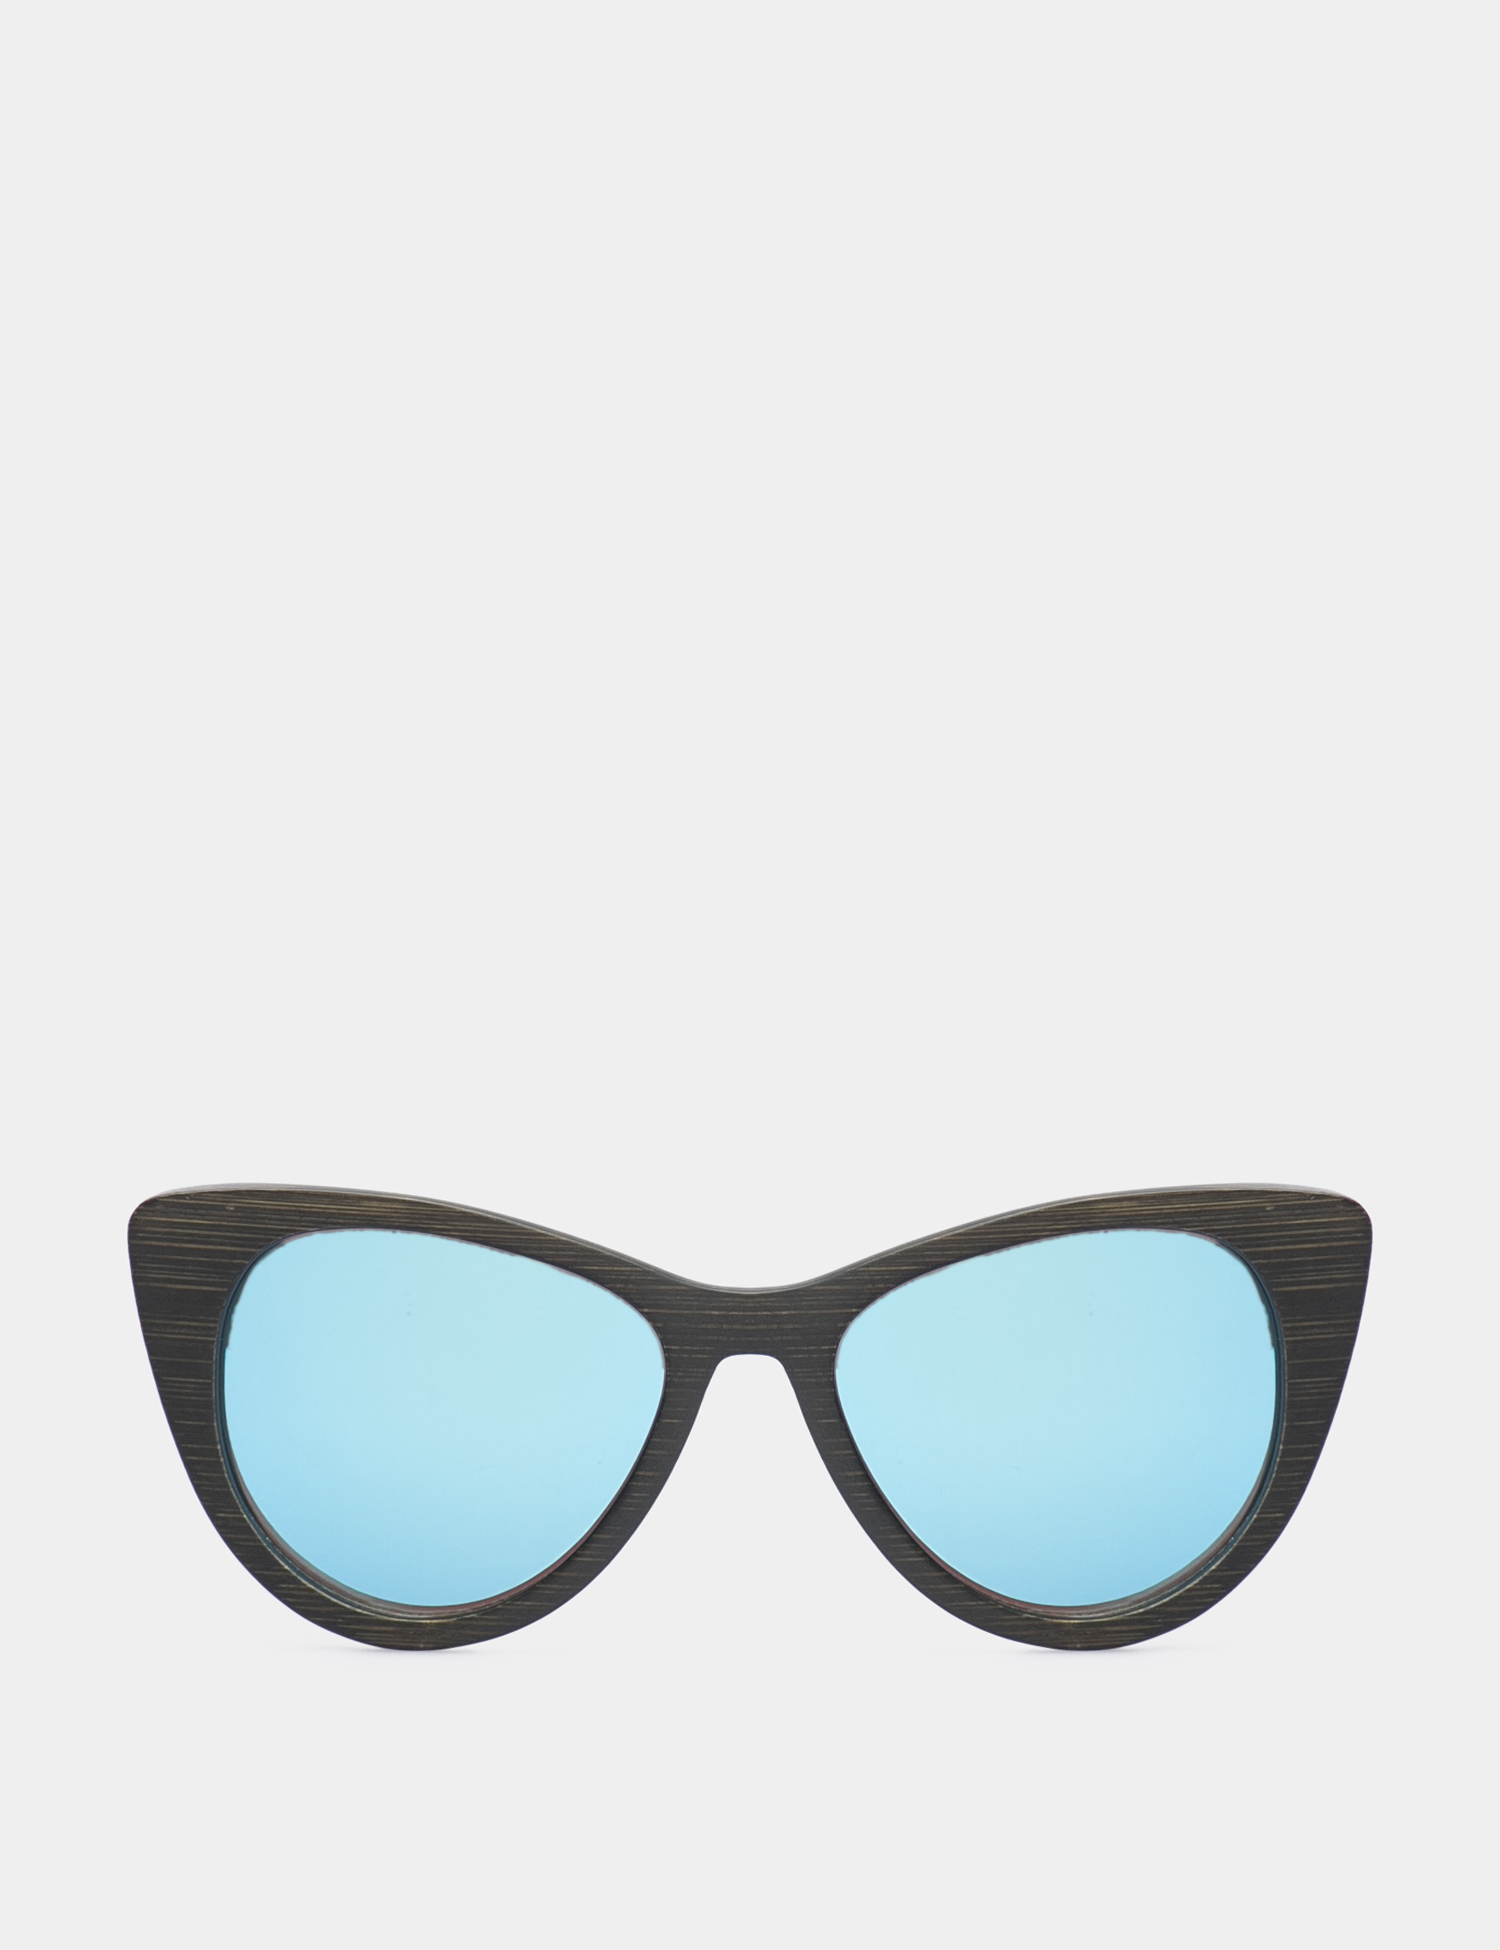 Картинка Cині сонцезахисні окуляри з дерев'яною оправою